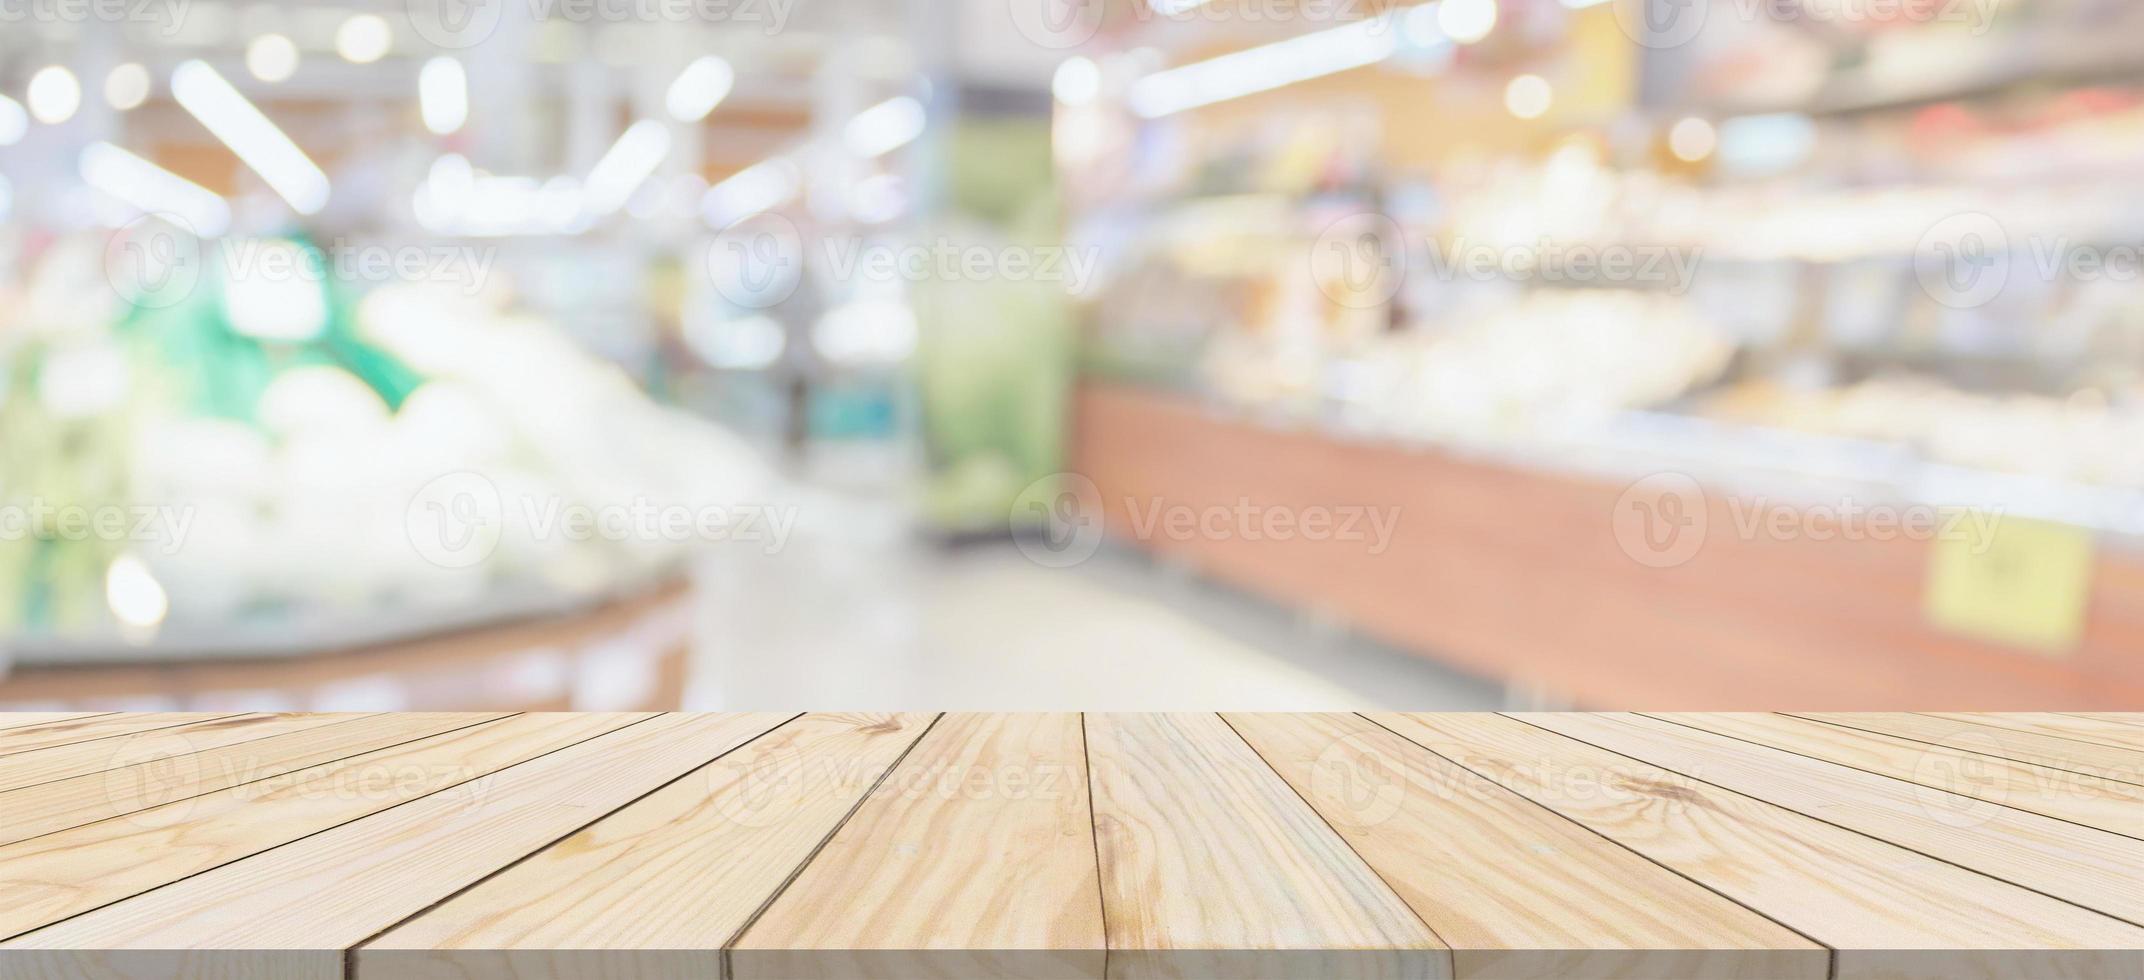 dessus de table en bois avec supermarché épicerie arrière-plan flou défocalisé avec lumière bokeh pour l'affichage du produit photo